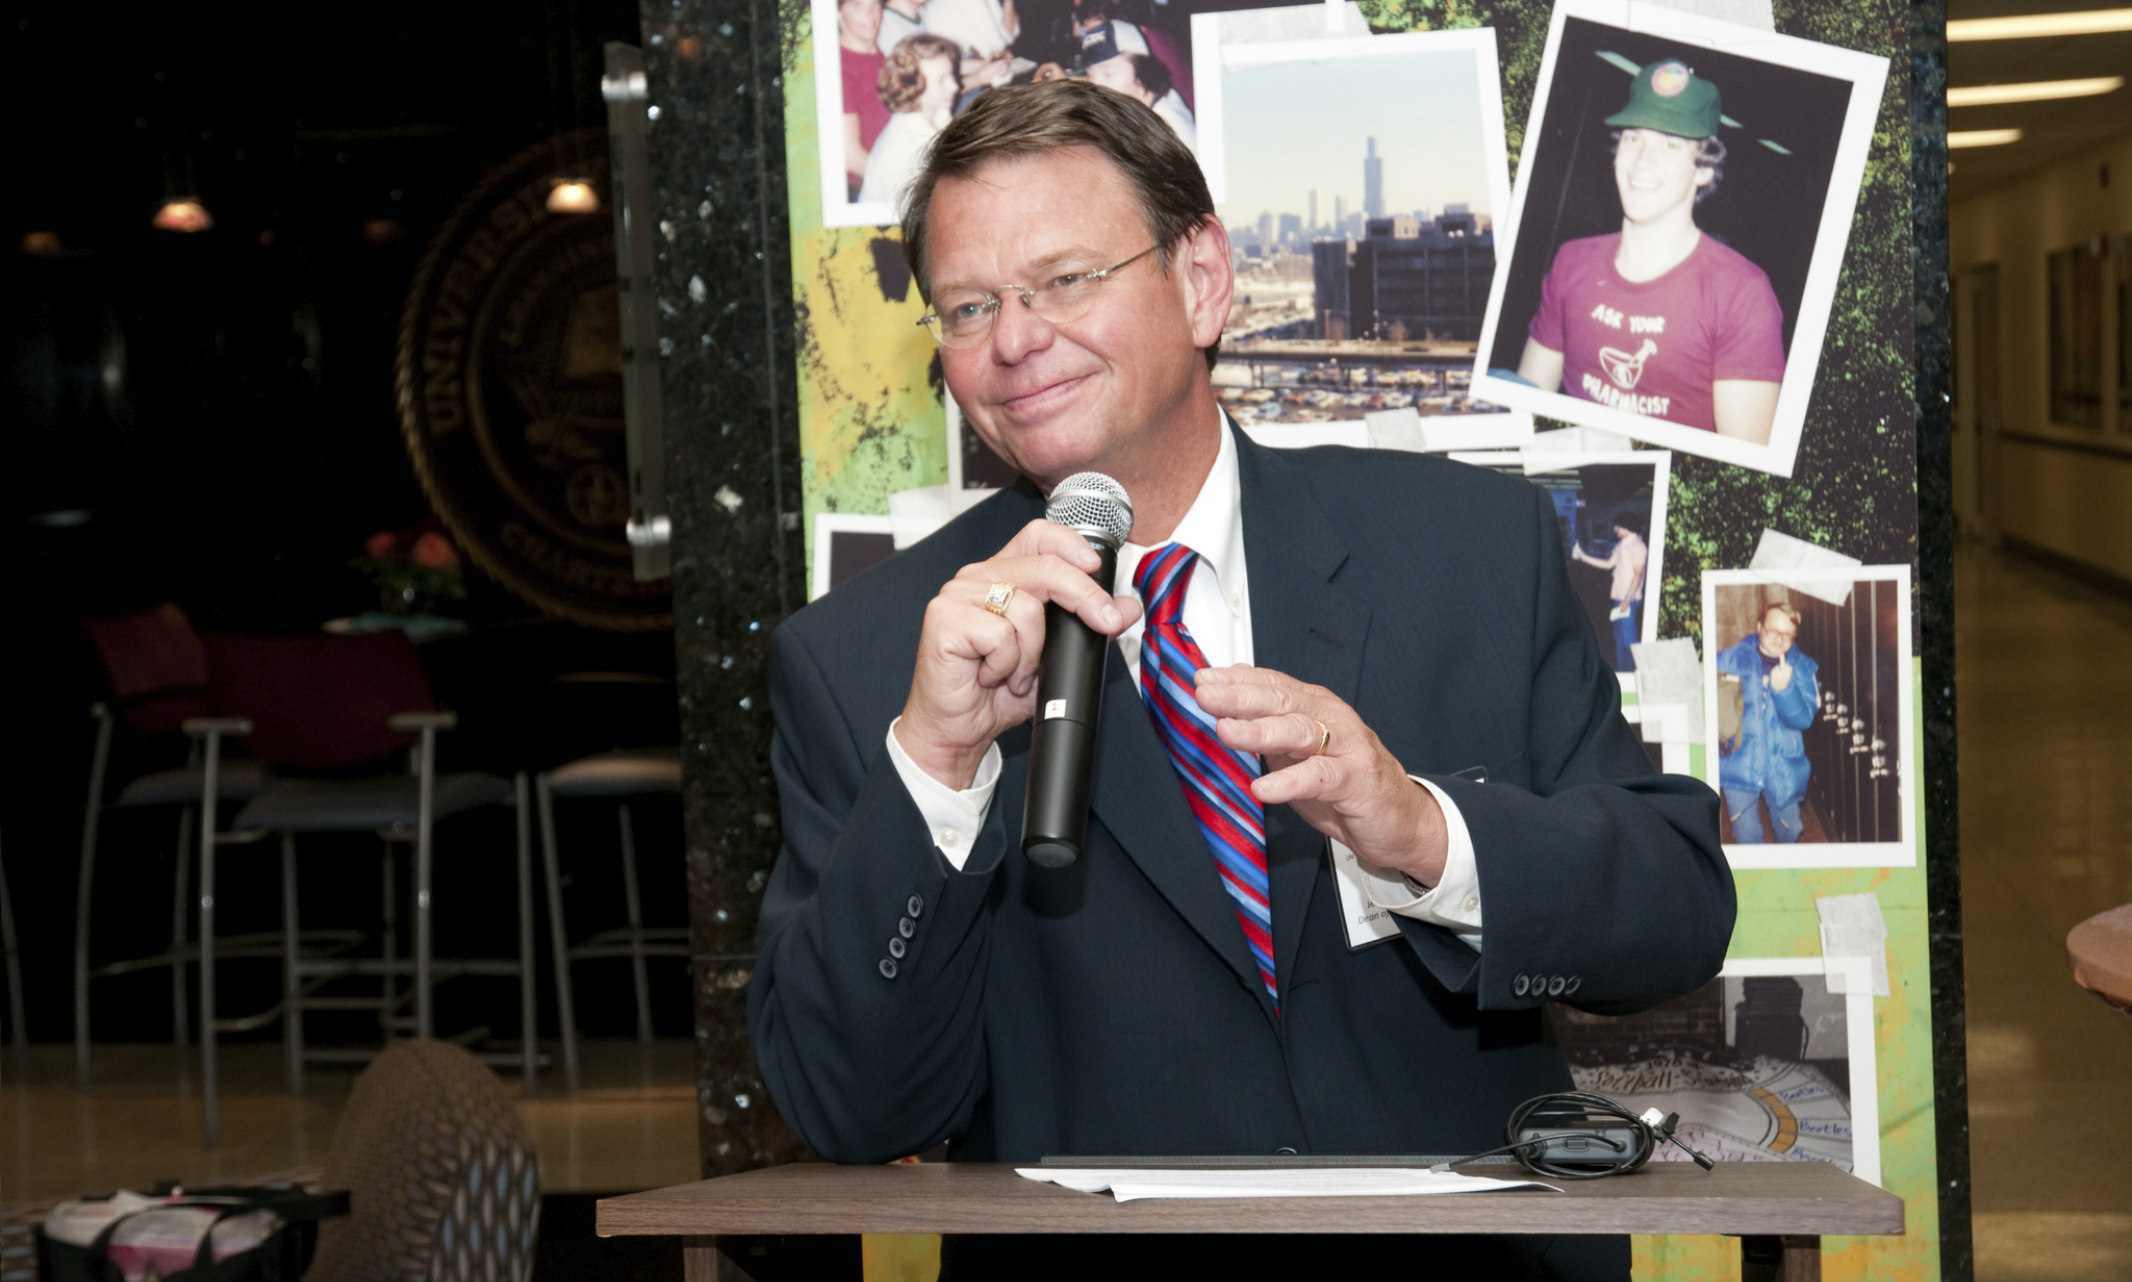 Jerry Bauman speaks during an event